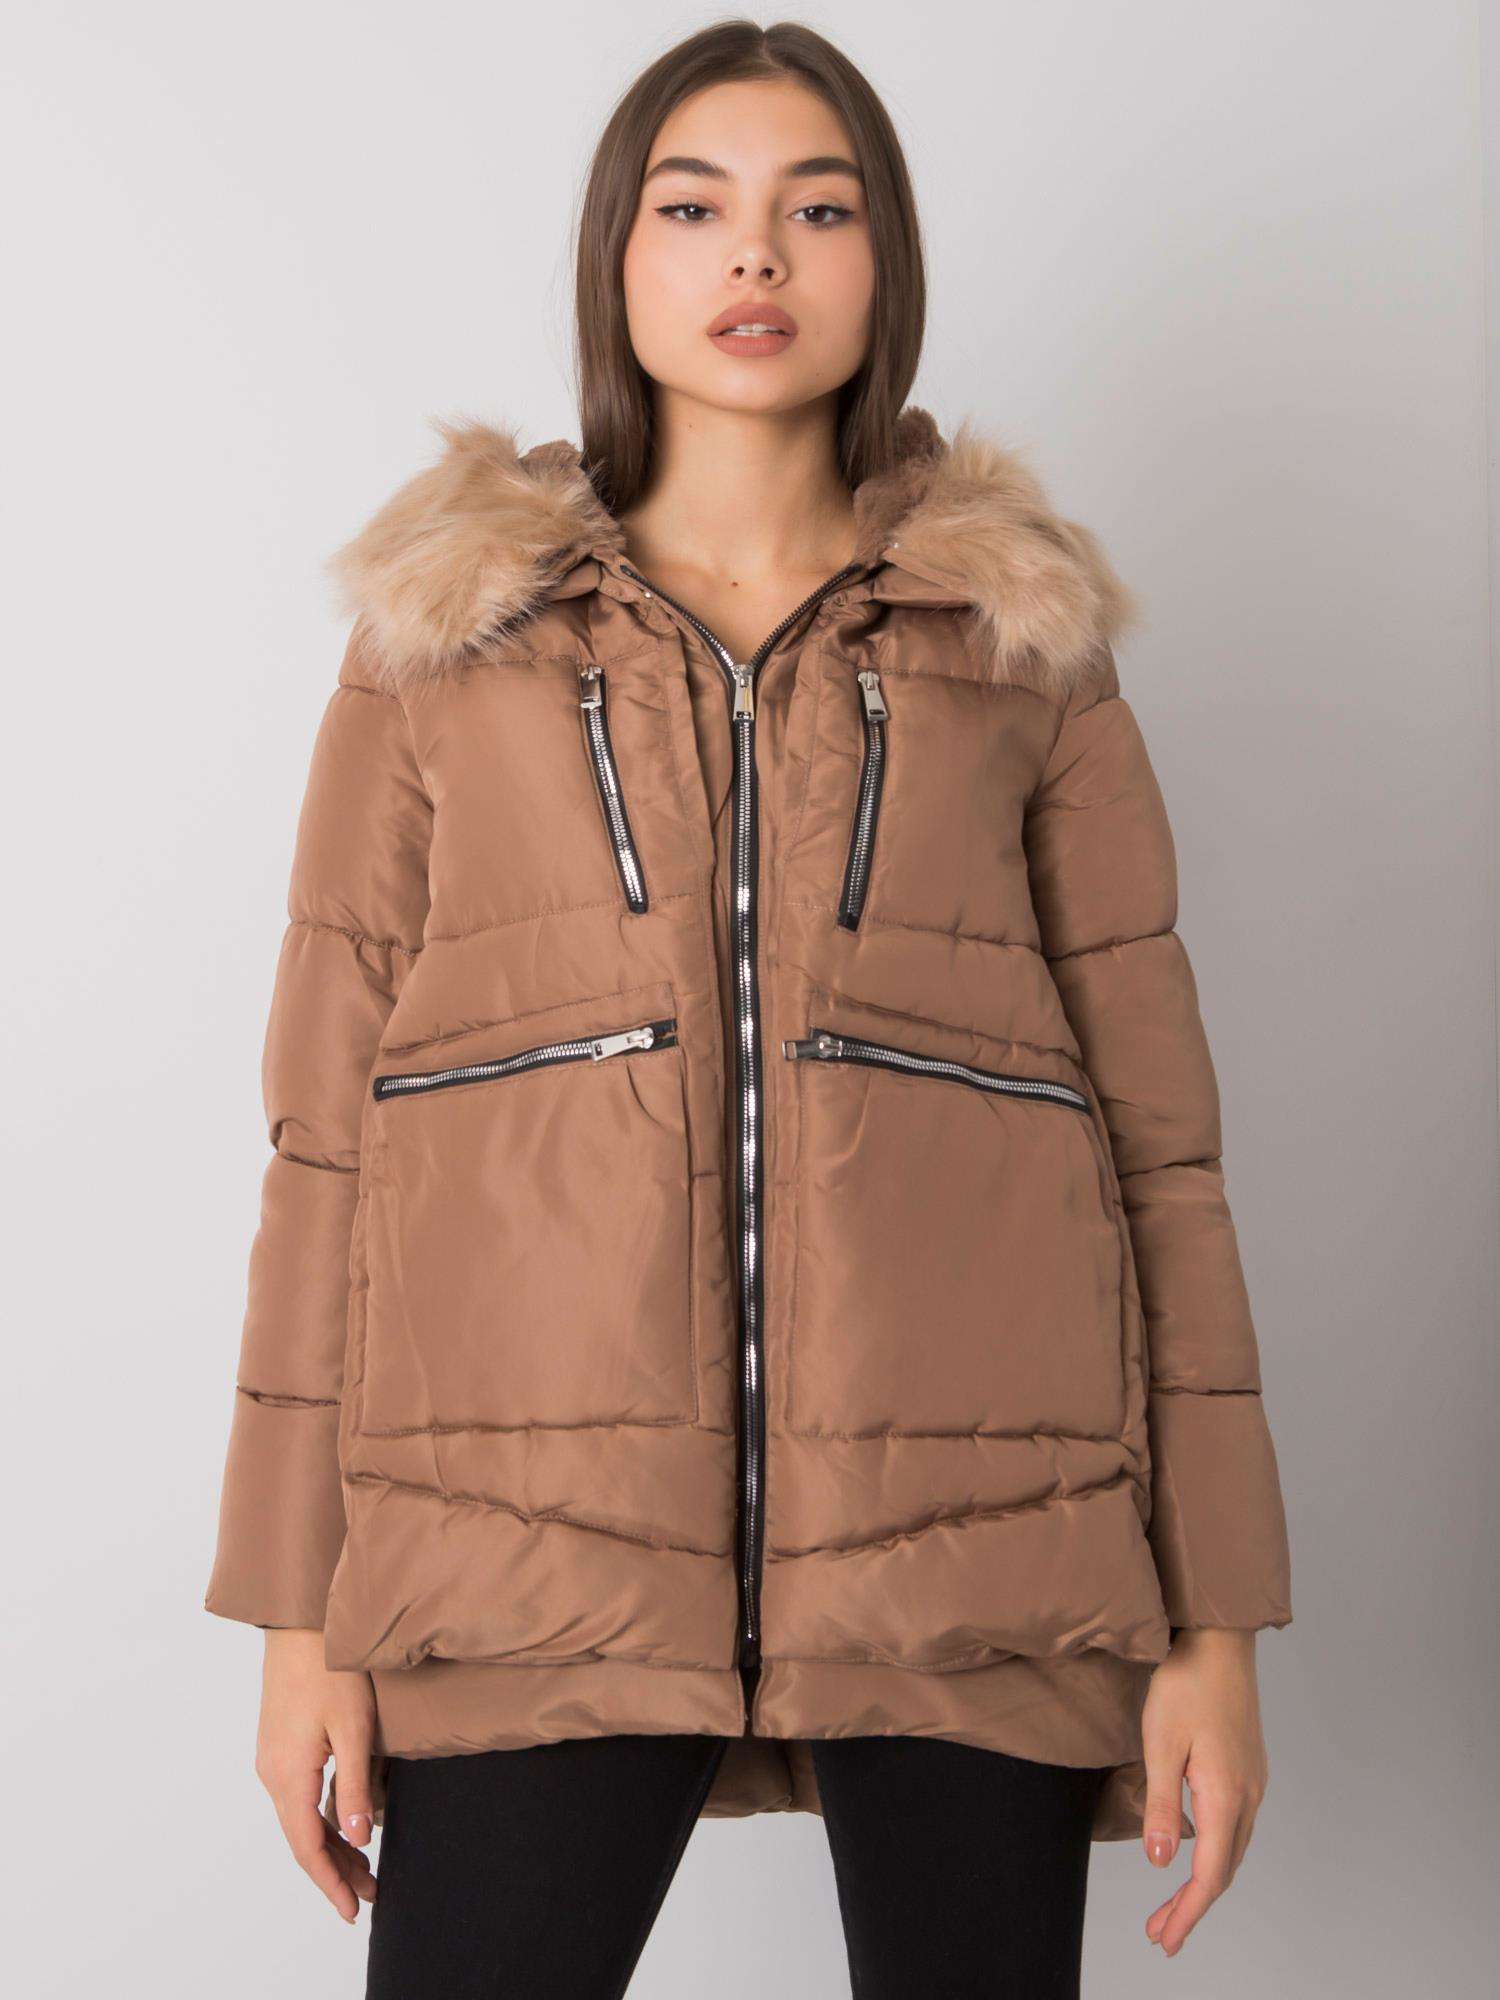 Svetlo hnedá dámska zimná bunda so zipsami NM-KR-H-1072.95P-camel Veľkosť: M